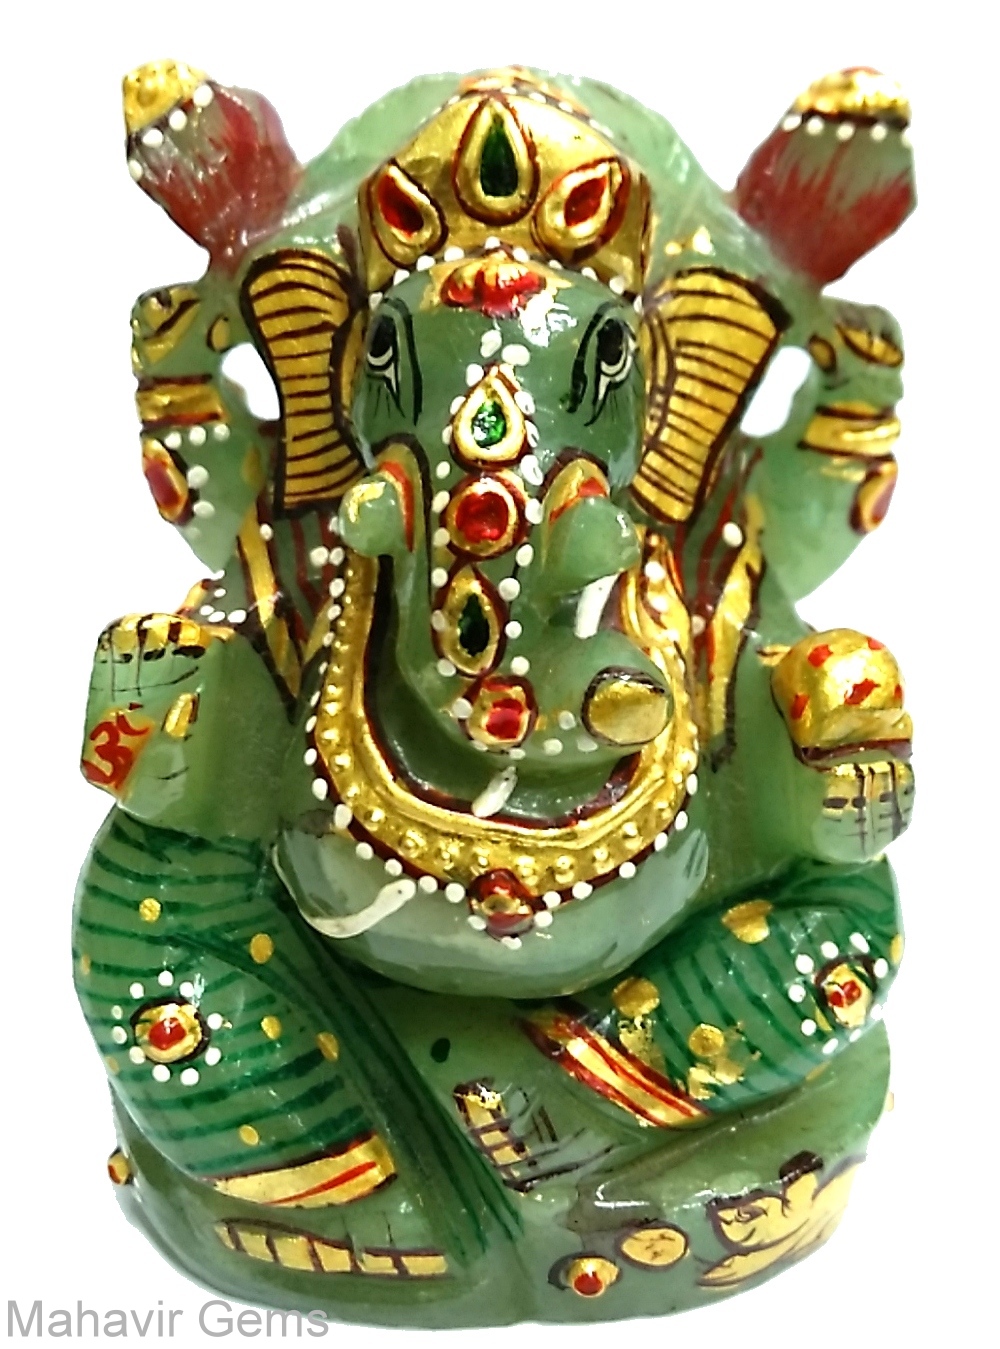 http://www.mahavirgems.in/Carving/Ganesha/Ganesha-Serpantine-Gemstone-1075Carats